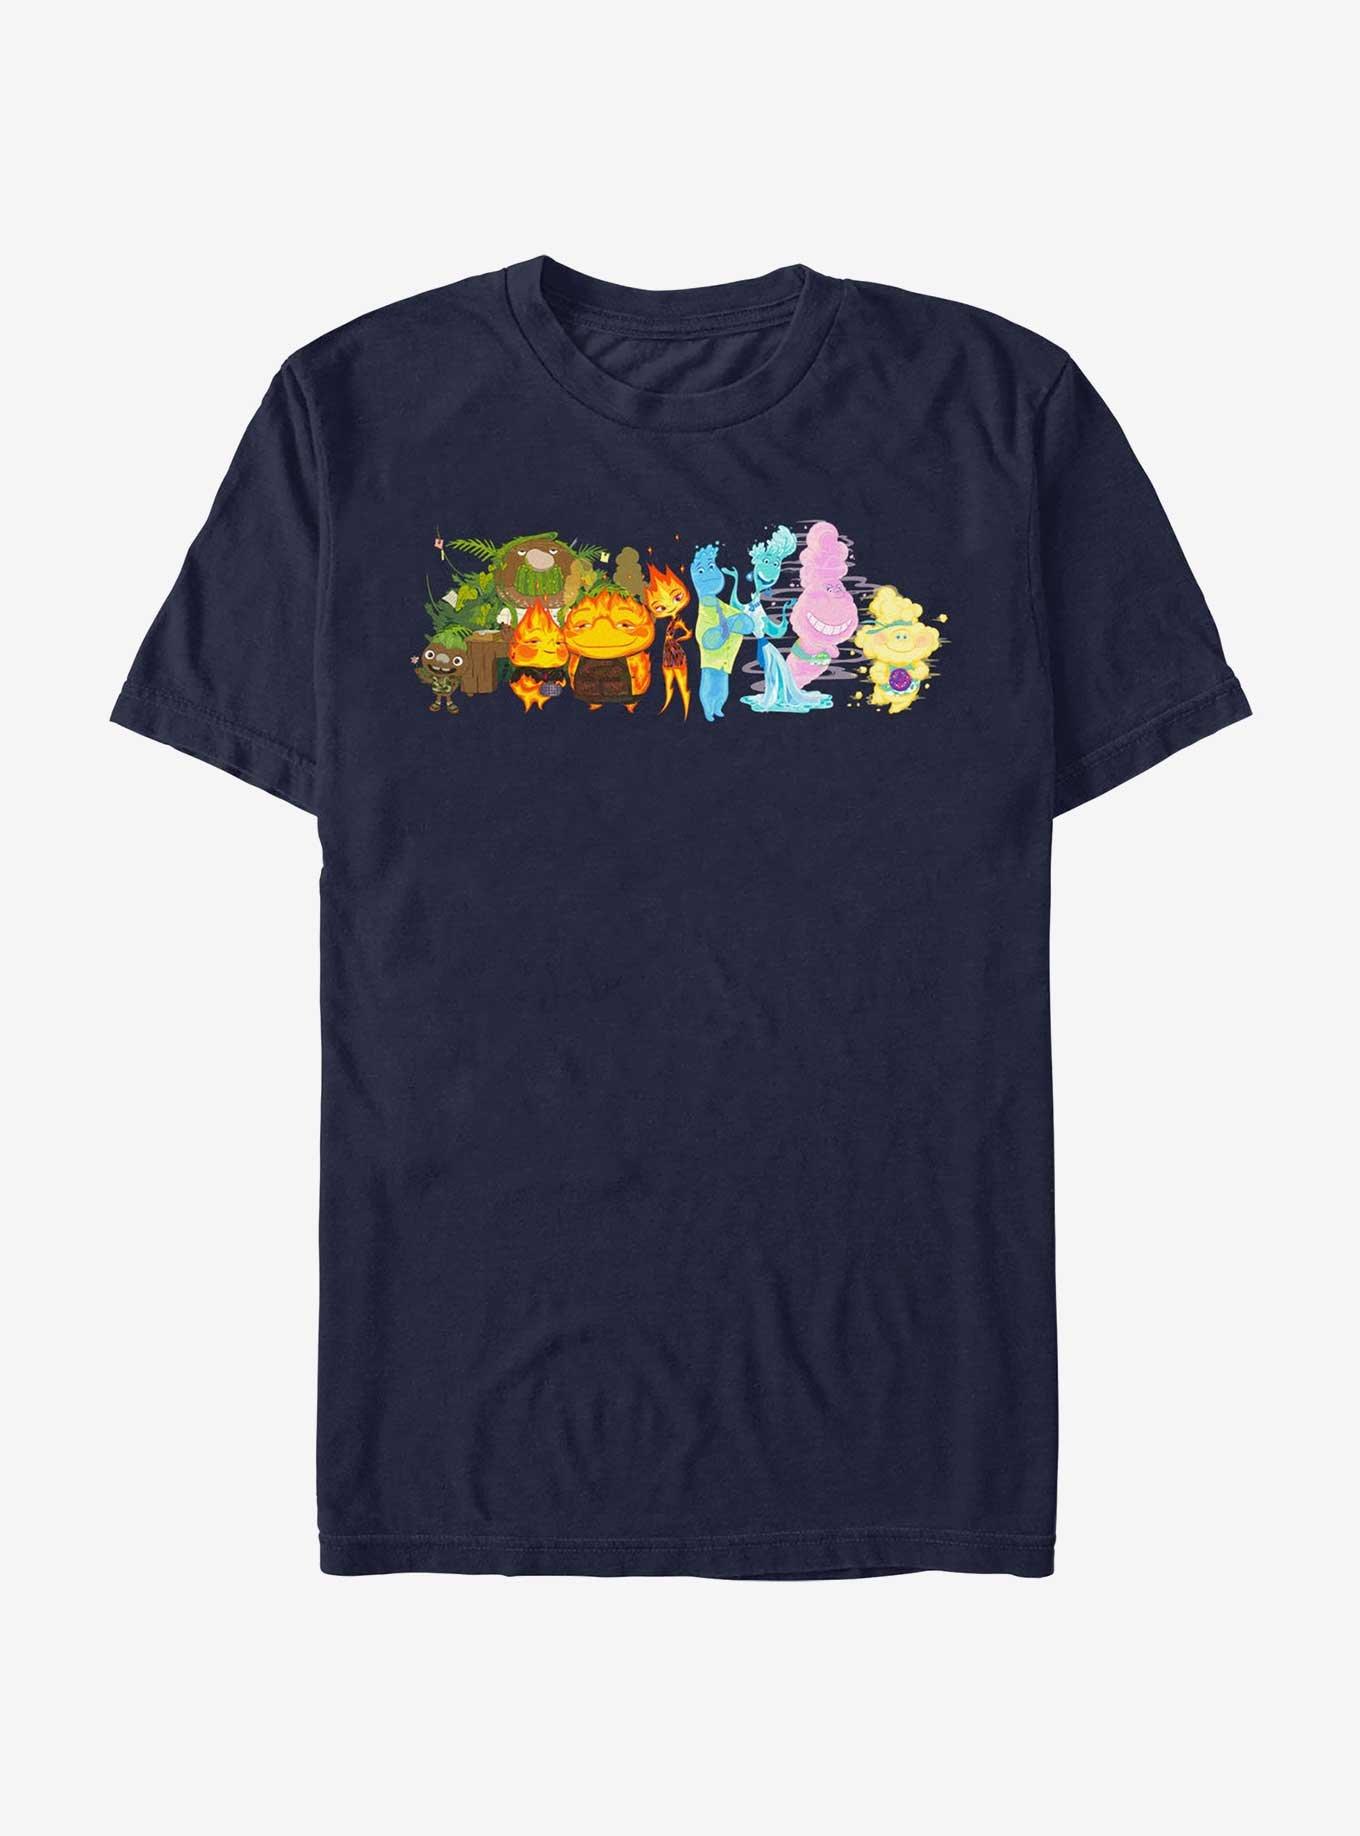 Disney Pixar Elemental Big Groupshot T-Shirt, NAVY, hi-res